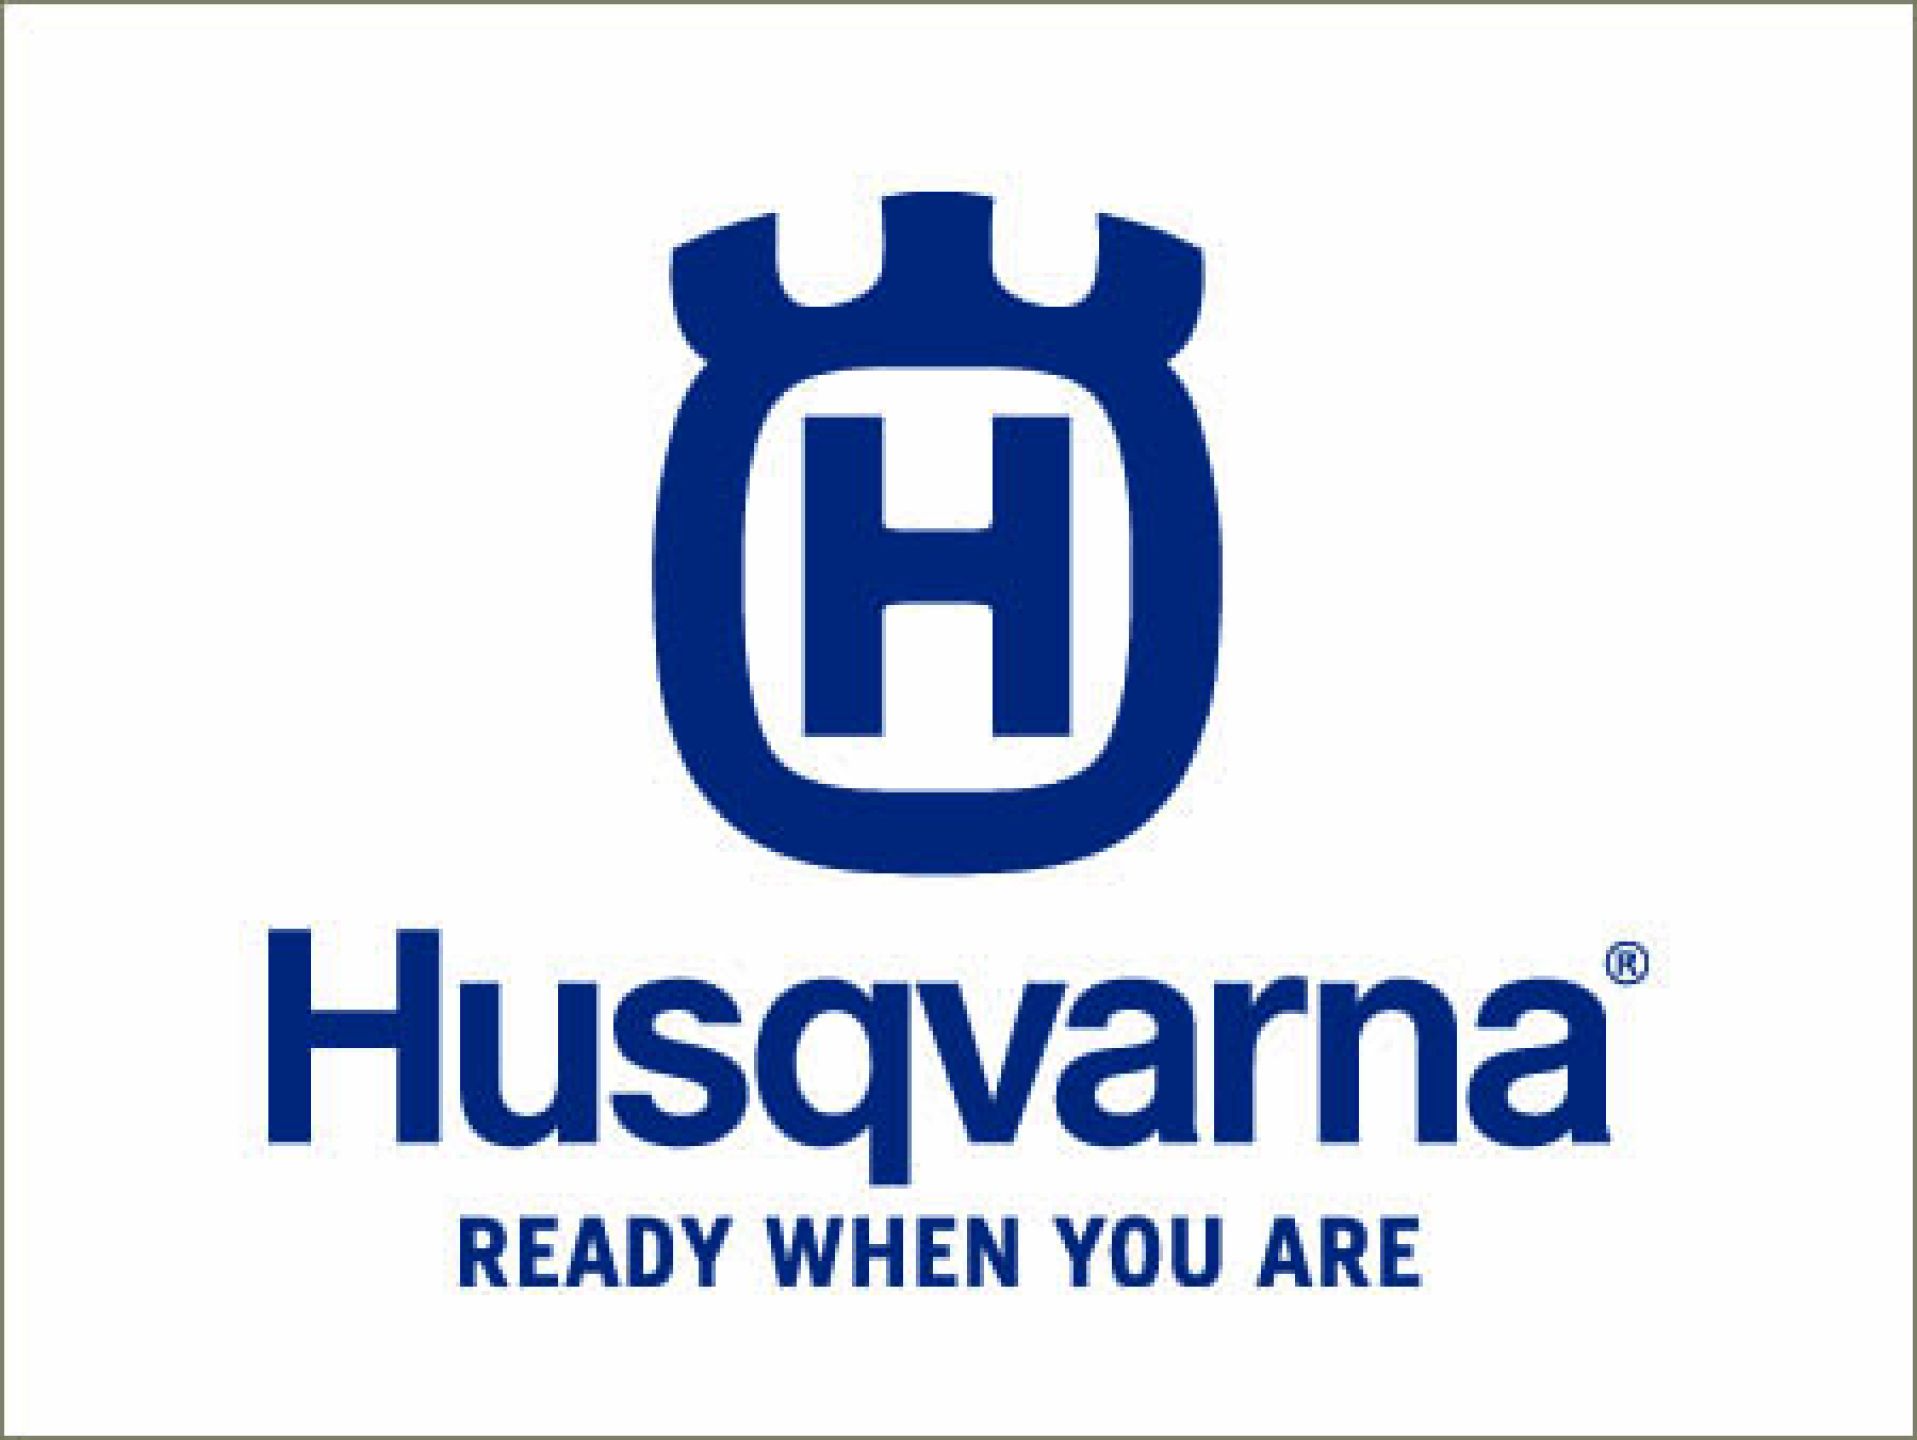 HBH-Baumaschinen-Fachmarkt-HUSQVARNA-c79dfaf0 HBH Baumaschinenhandel - Mieten oder Kaufen